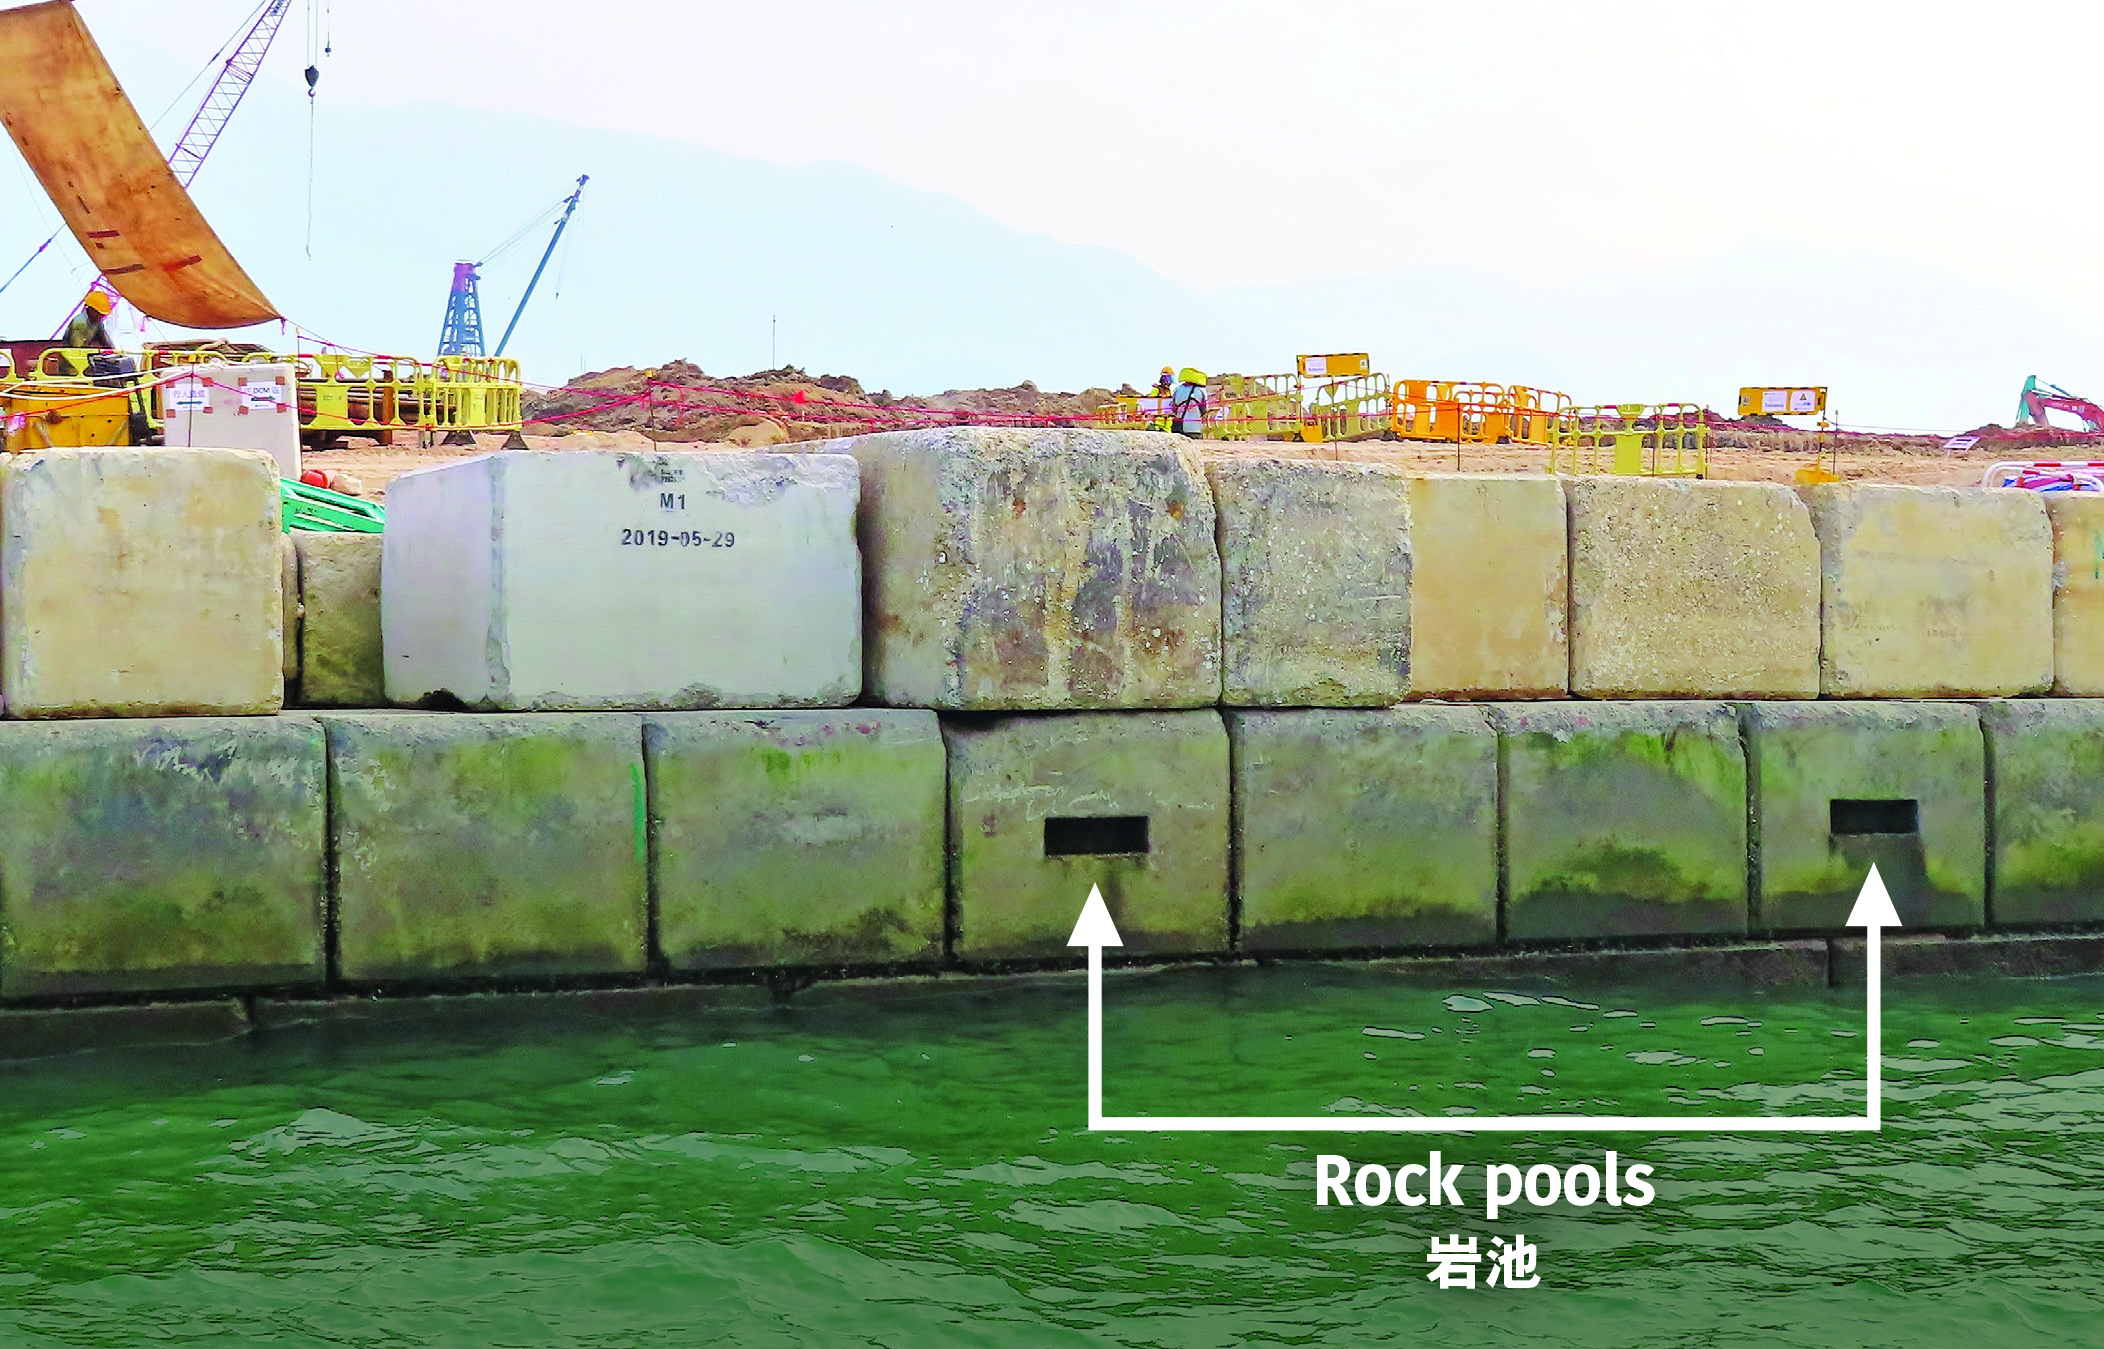 分散鋪設於垂直海堤上的環保混凝土塊，有助提升海洋生物 多樣性（上）﹔岩池仿照布滿岩石岸邊的天然岩池，具有蓄水作用（下）。